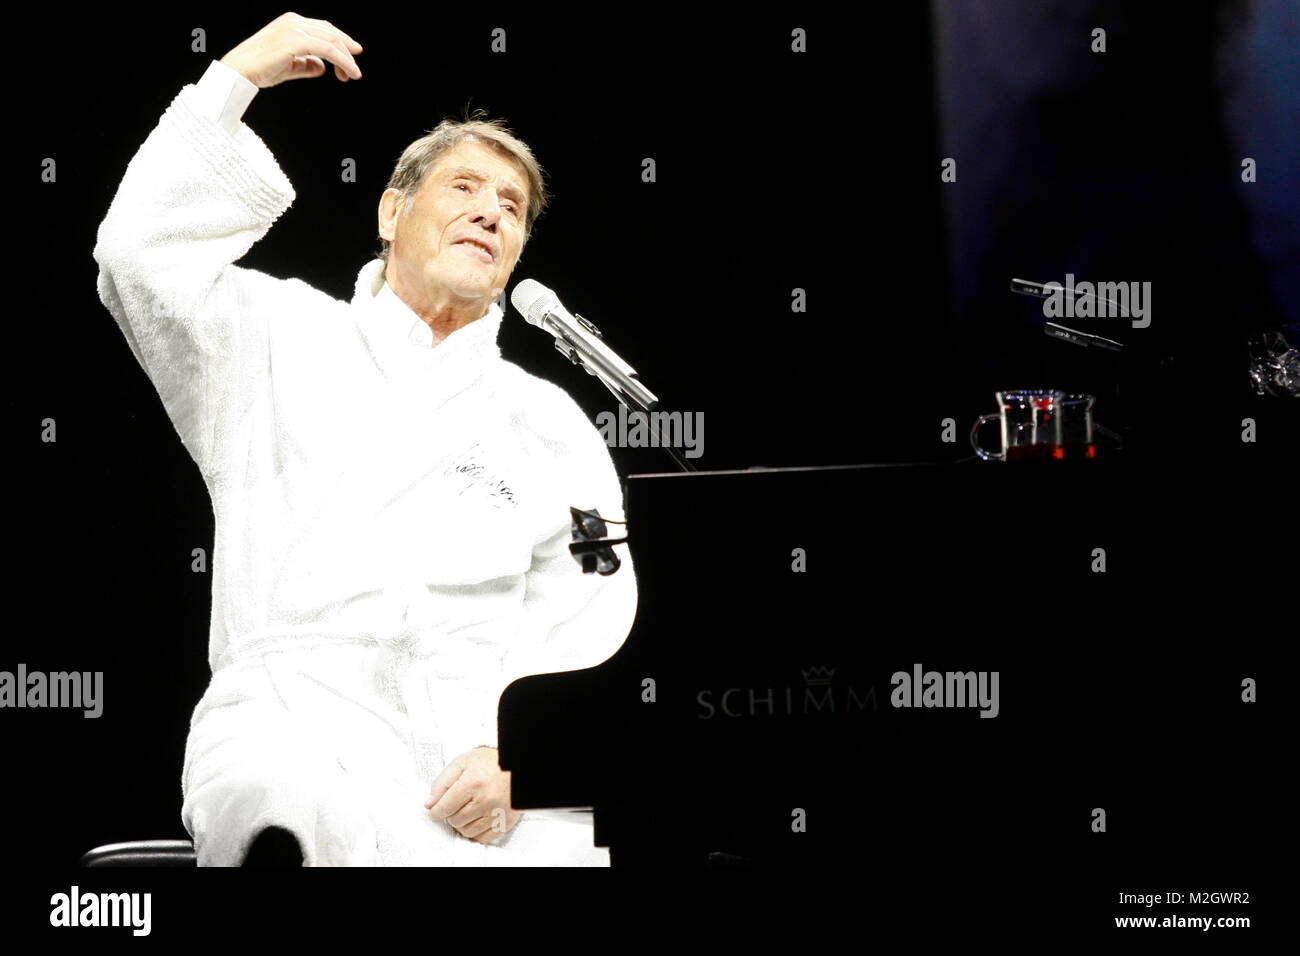 Der 77-jährige Unterhaltungsmusiker Udo Jürgens spielt am 20.02.2012 in der ausverkauften Festhalle in Frankfurt am Main. +++ 3S PHOTO / Foto: Sven-Sebastian Sajak Stock Photo